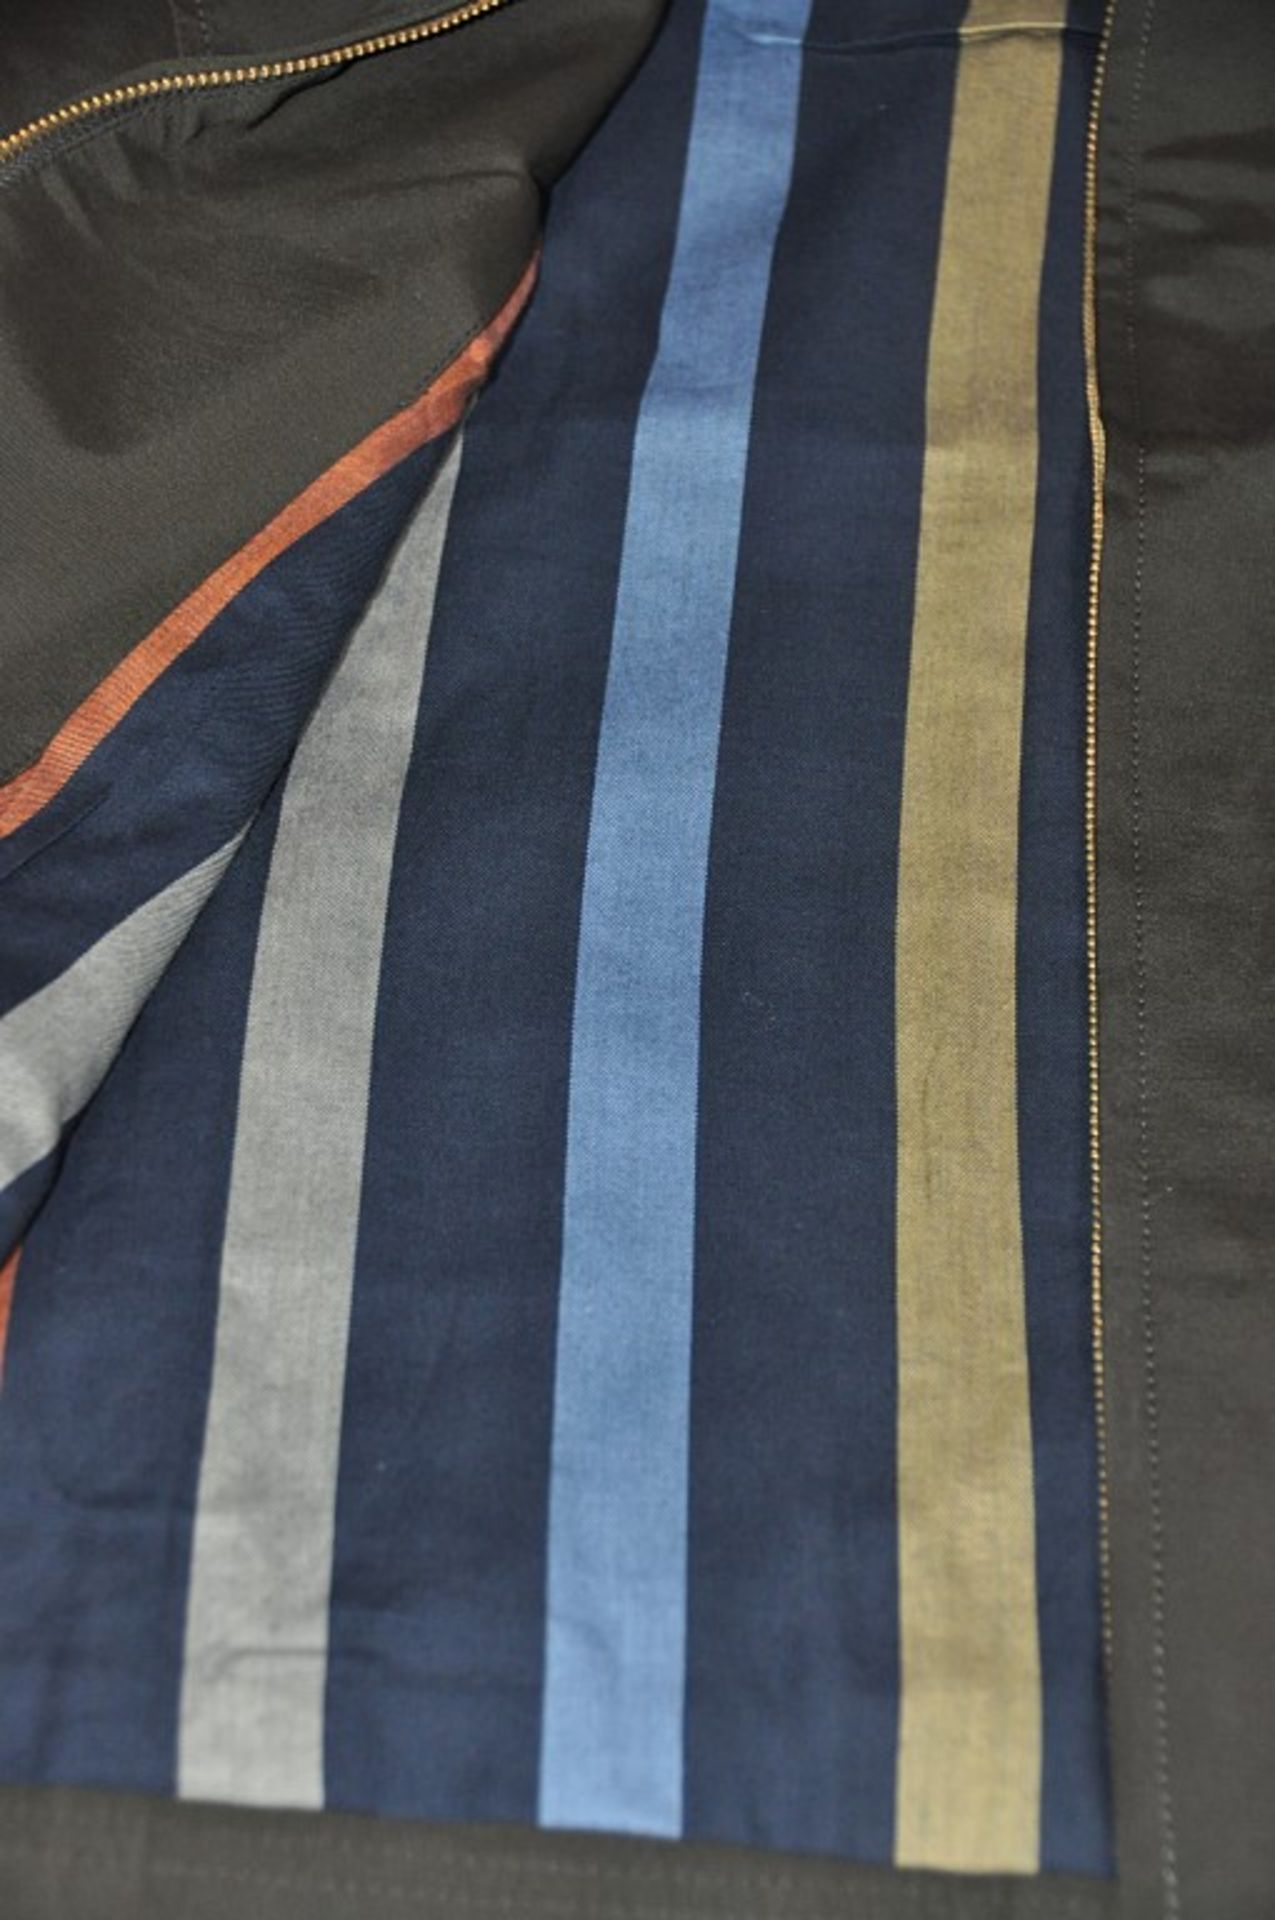 1 x Men's Long Sleeve Jacket By International Luxury Brand "Vasto" (BAS7101) – Size: Large - Colour: - Image 5 of 9